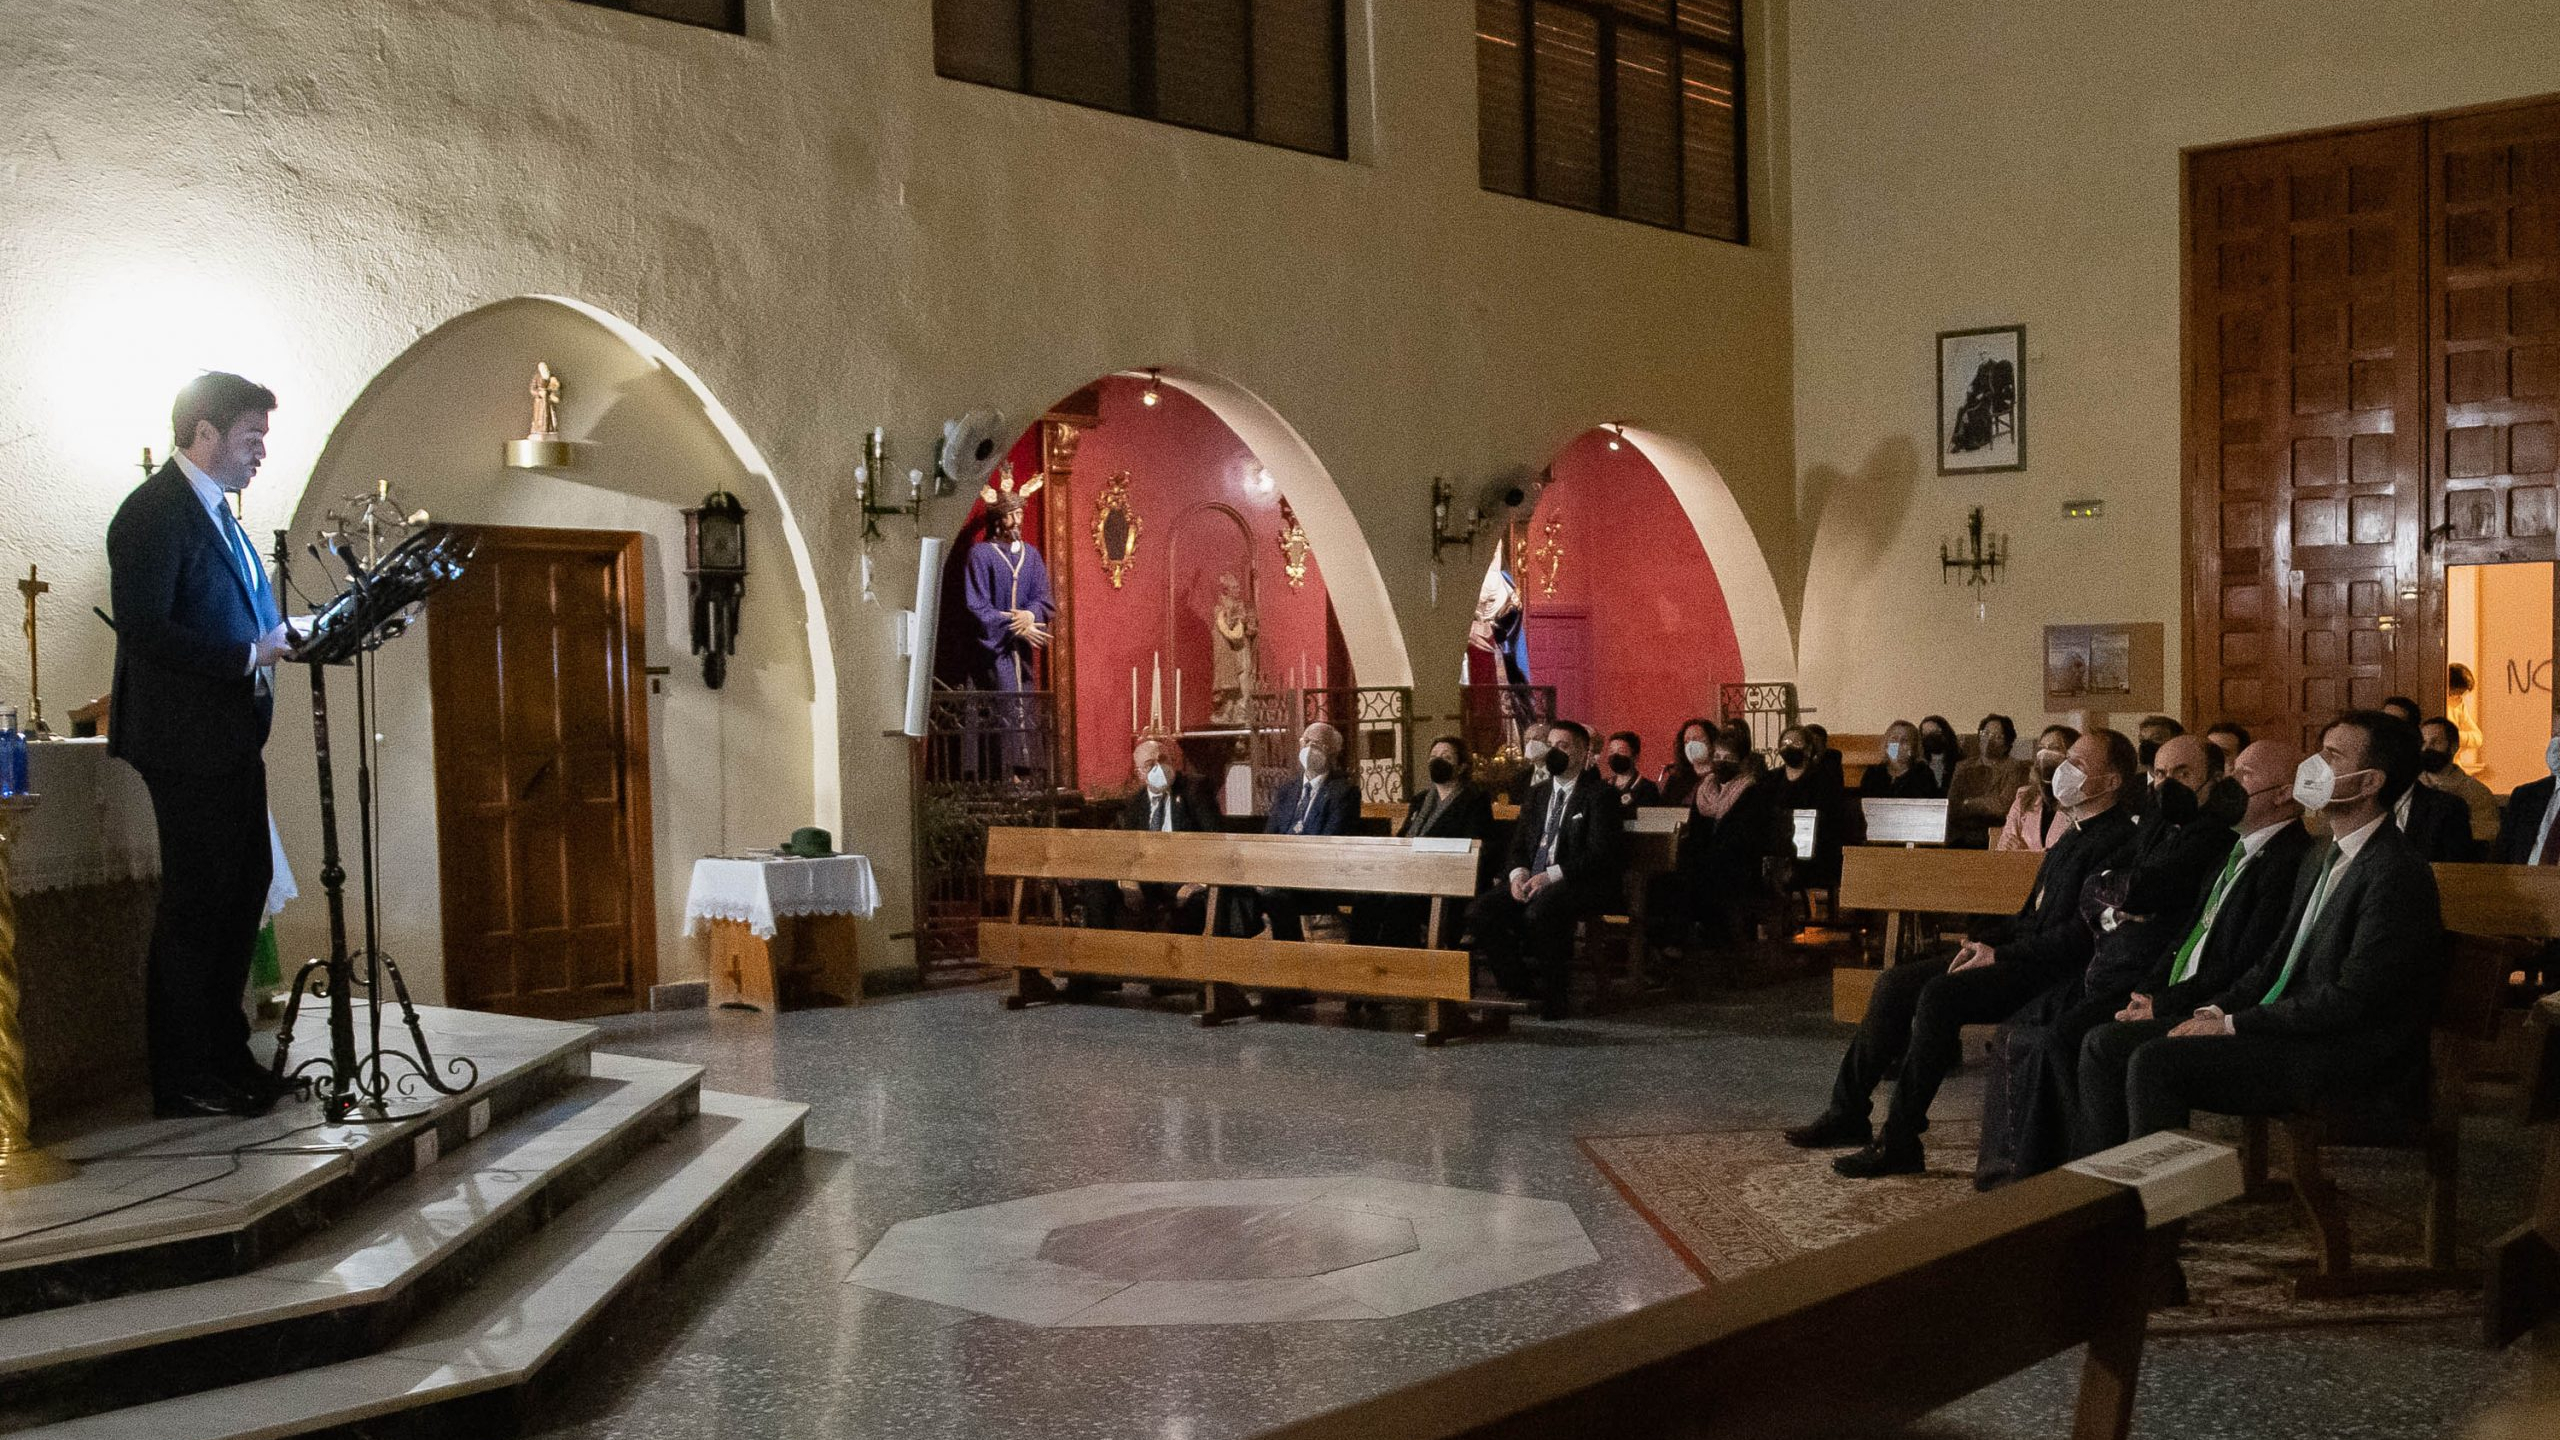 Misa en el interior de una iglesia en Almería